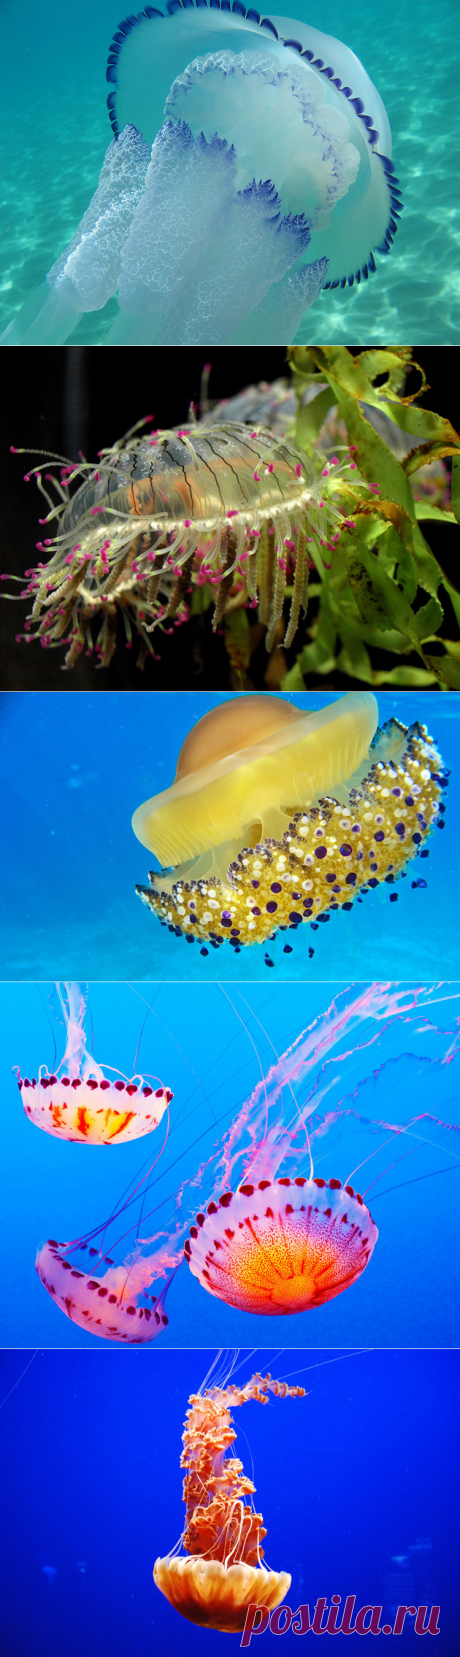 Медузы во всей своей красоте — Наука и жизнь